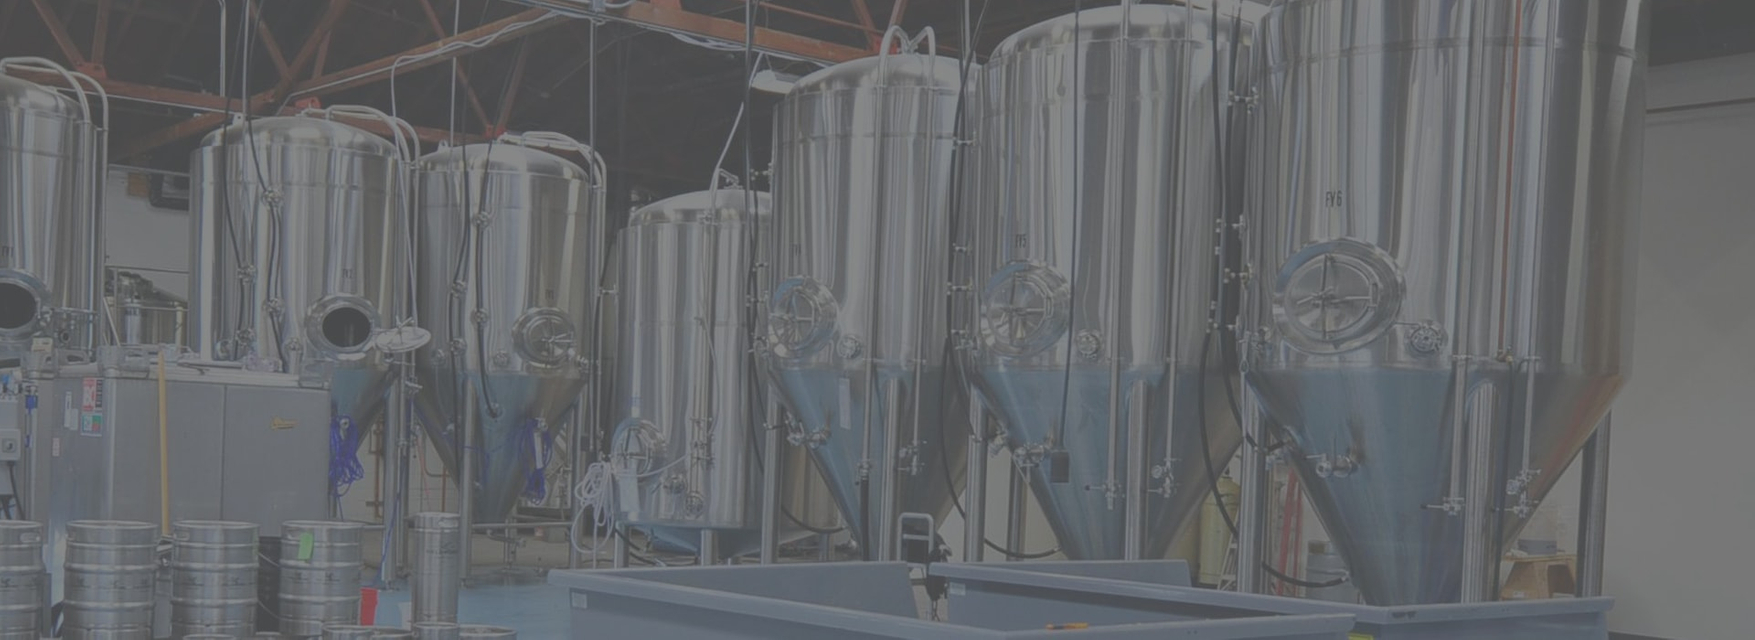 Tillverkare av bryggeriutrustning